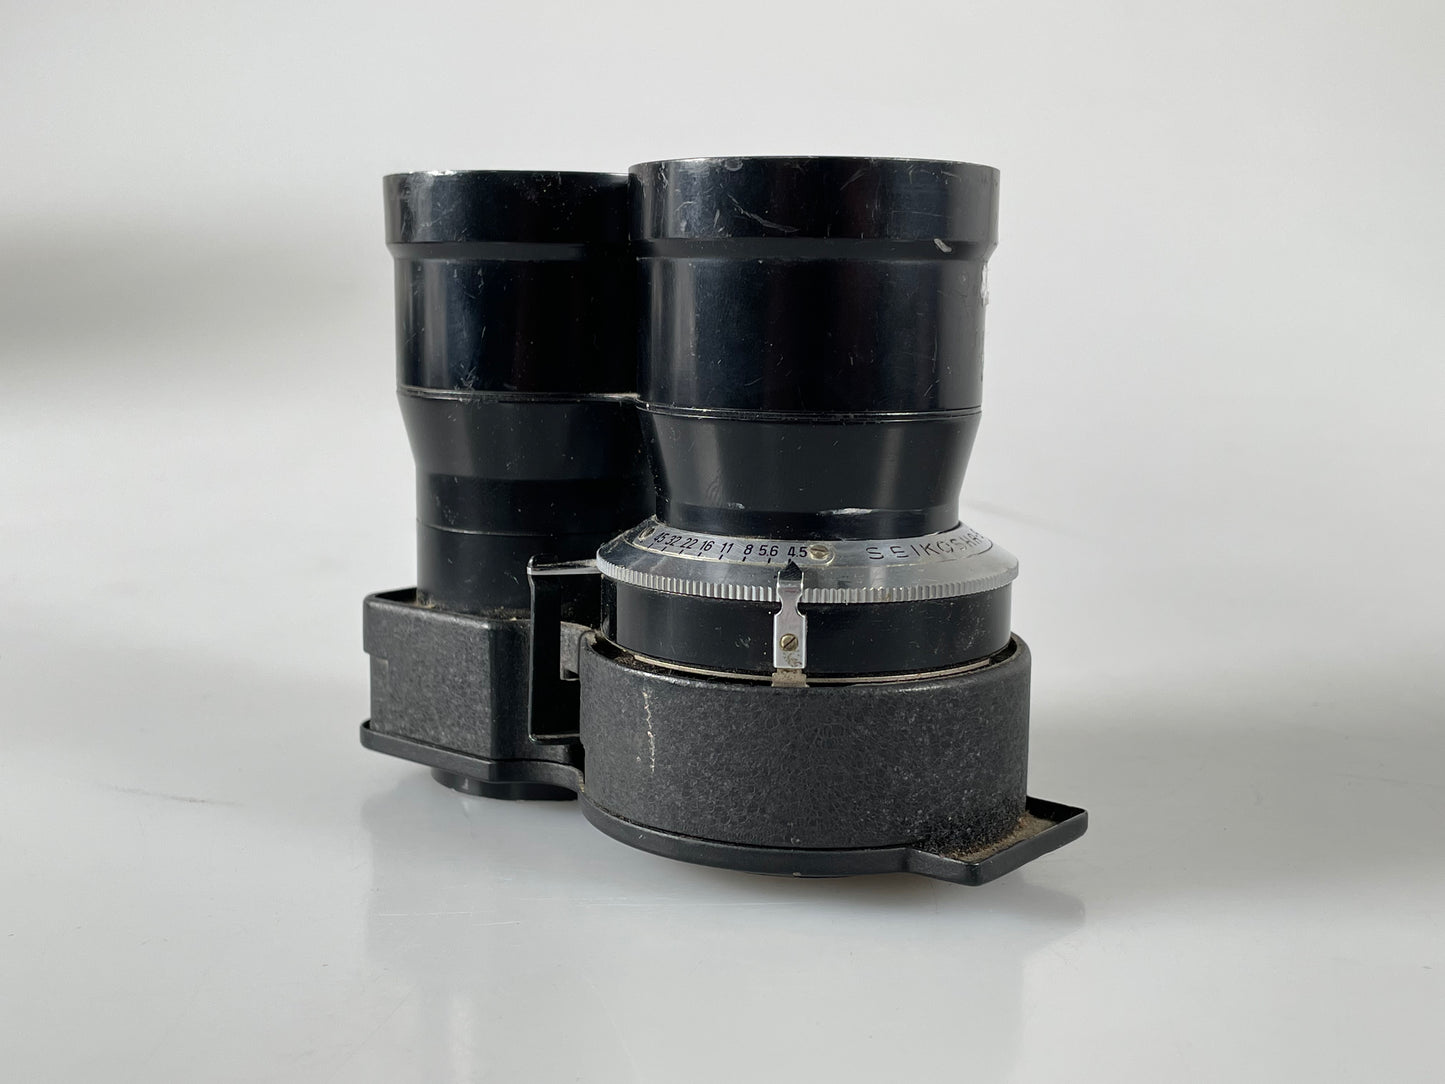 Mamiya TLR 13.5cm (135mm) f4.5 Sekor Lens for C330 C220 C33 C22 C3